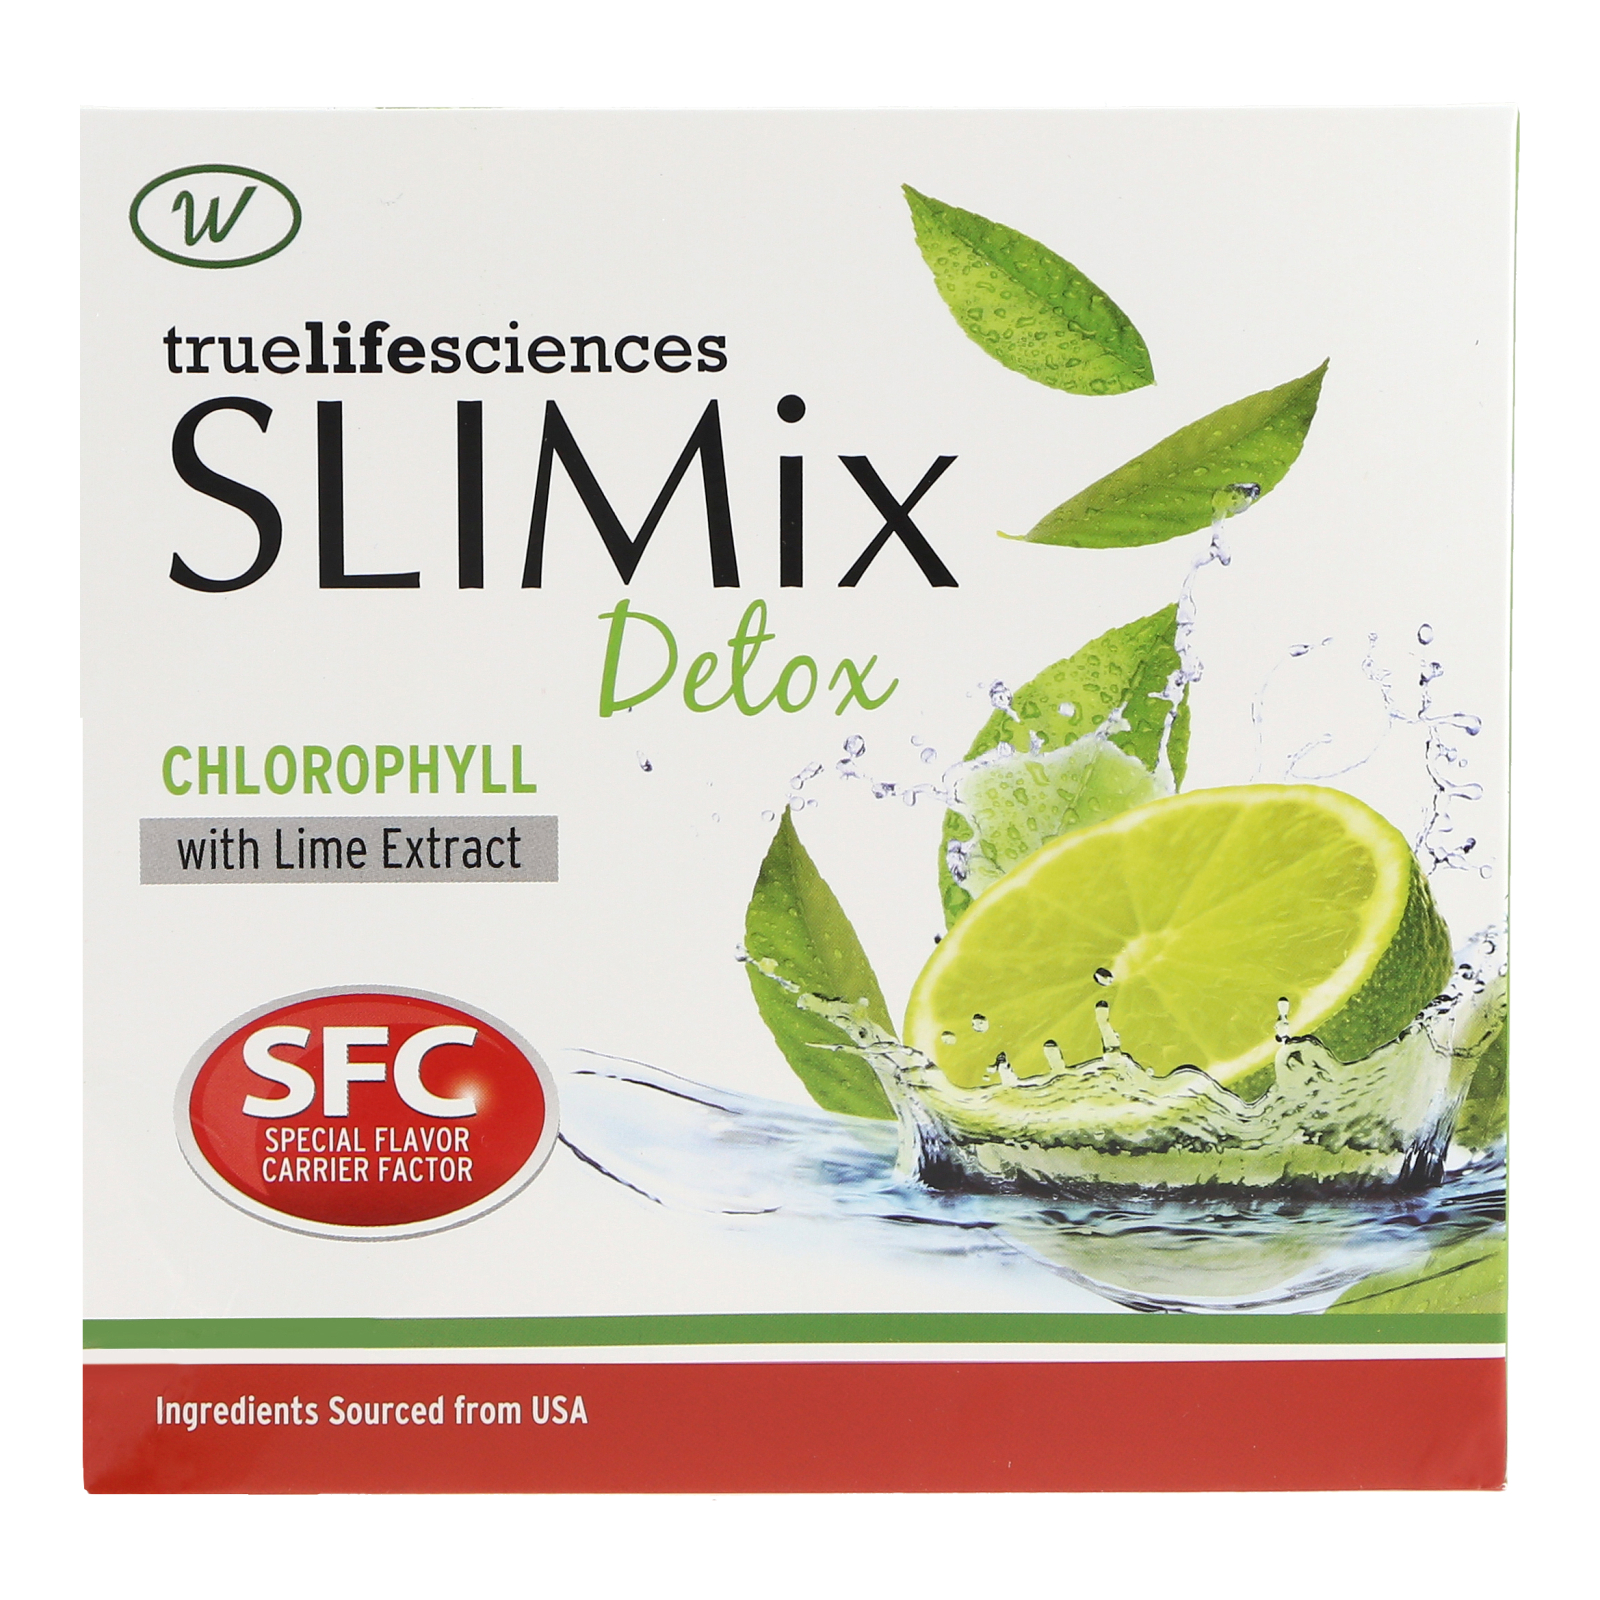 Thức uống Truelifesciences SLIMix Detox hoàn toàn tự nhiên giúp thanh nhiệt, giảm cân và giải độc cơ thể (Hộp 10 gói x 10g)